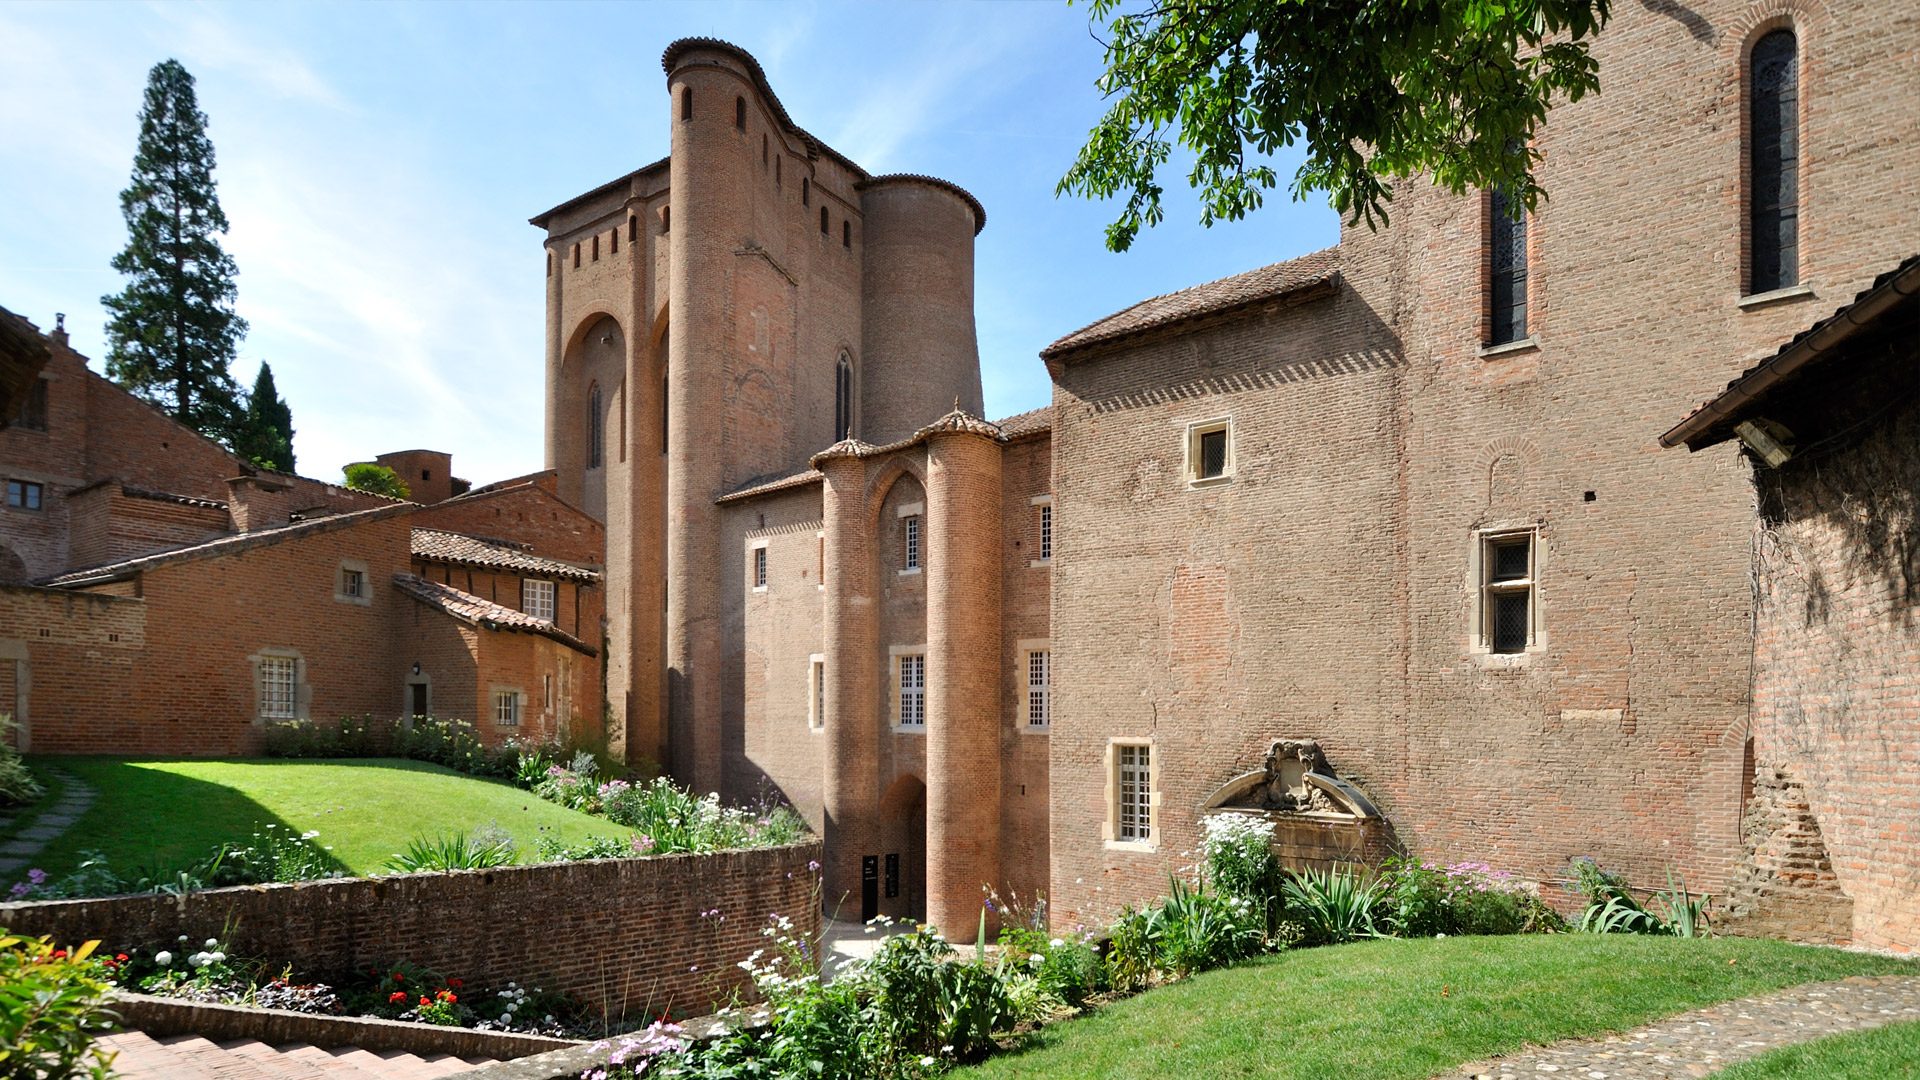 Der Berbie Palace, ehemalige bischöfliche Residenz. Heute eine Vitrine für das Museum Toulouse-Lautrec